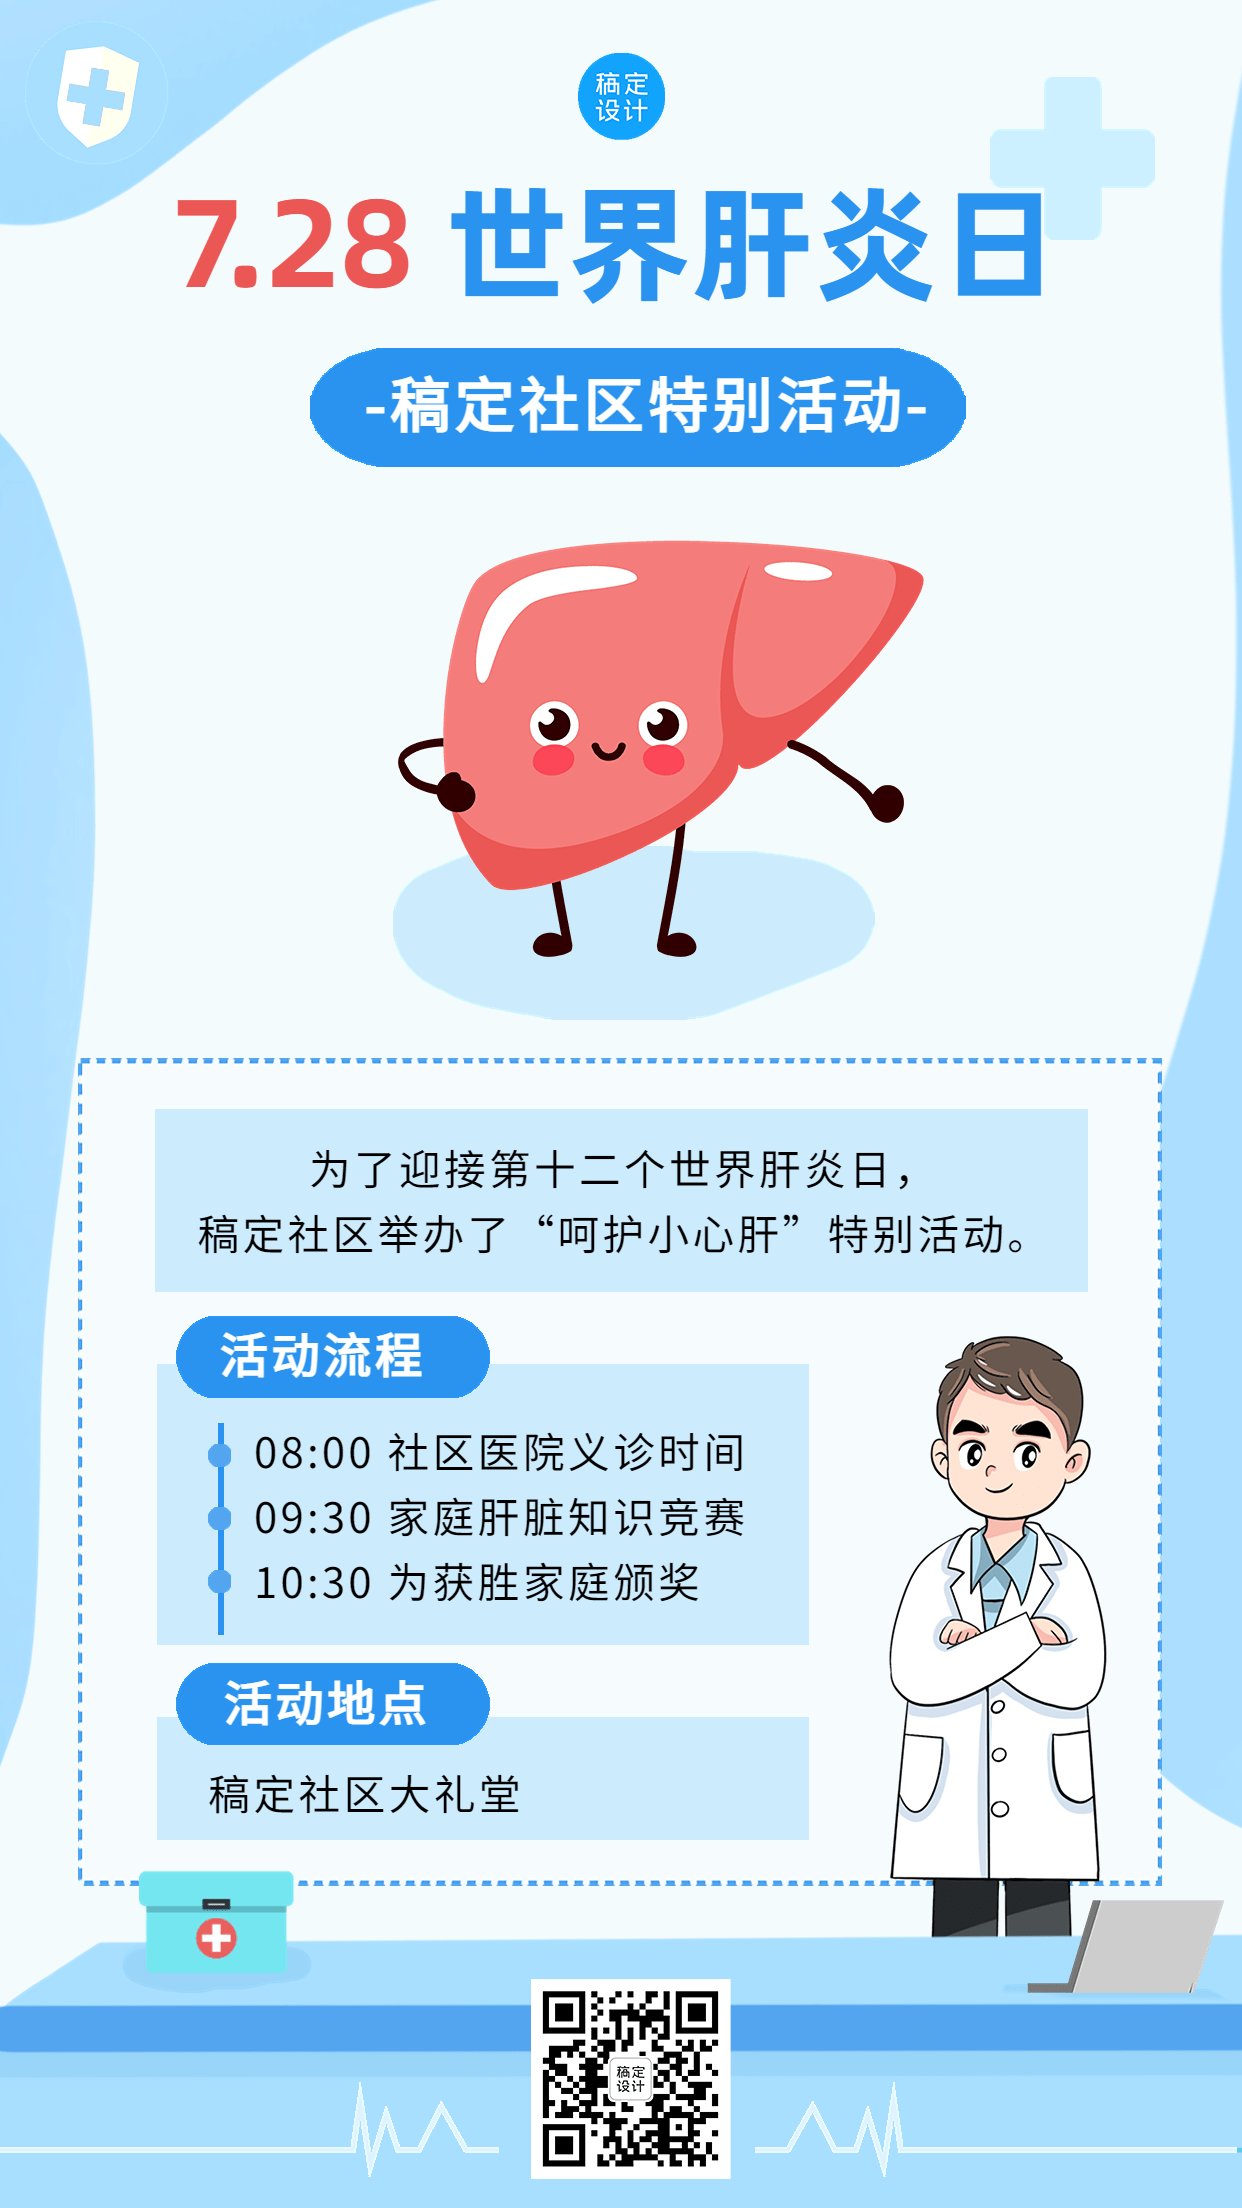 世界肝炎日活动手机海报